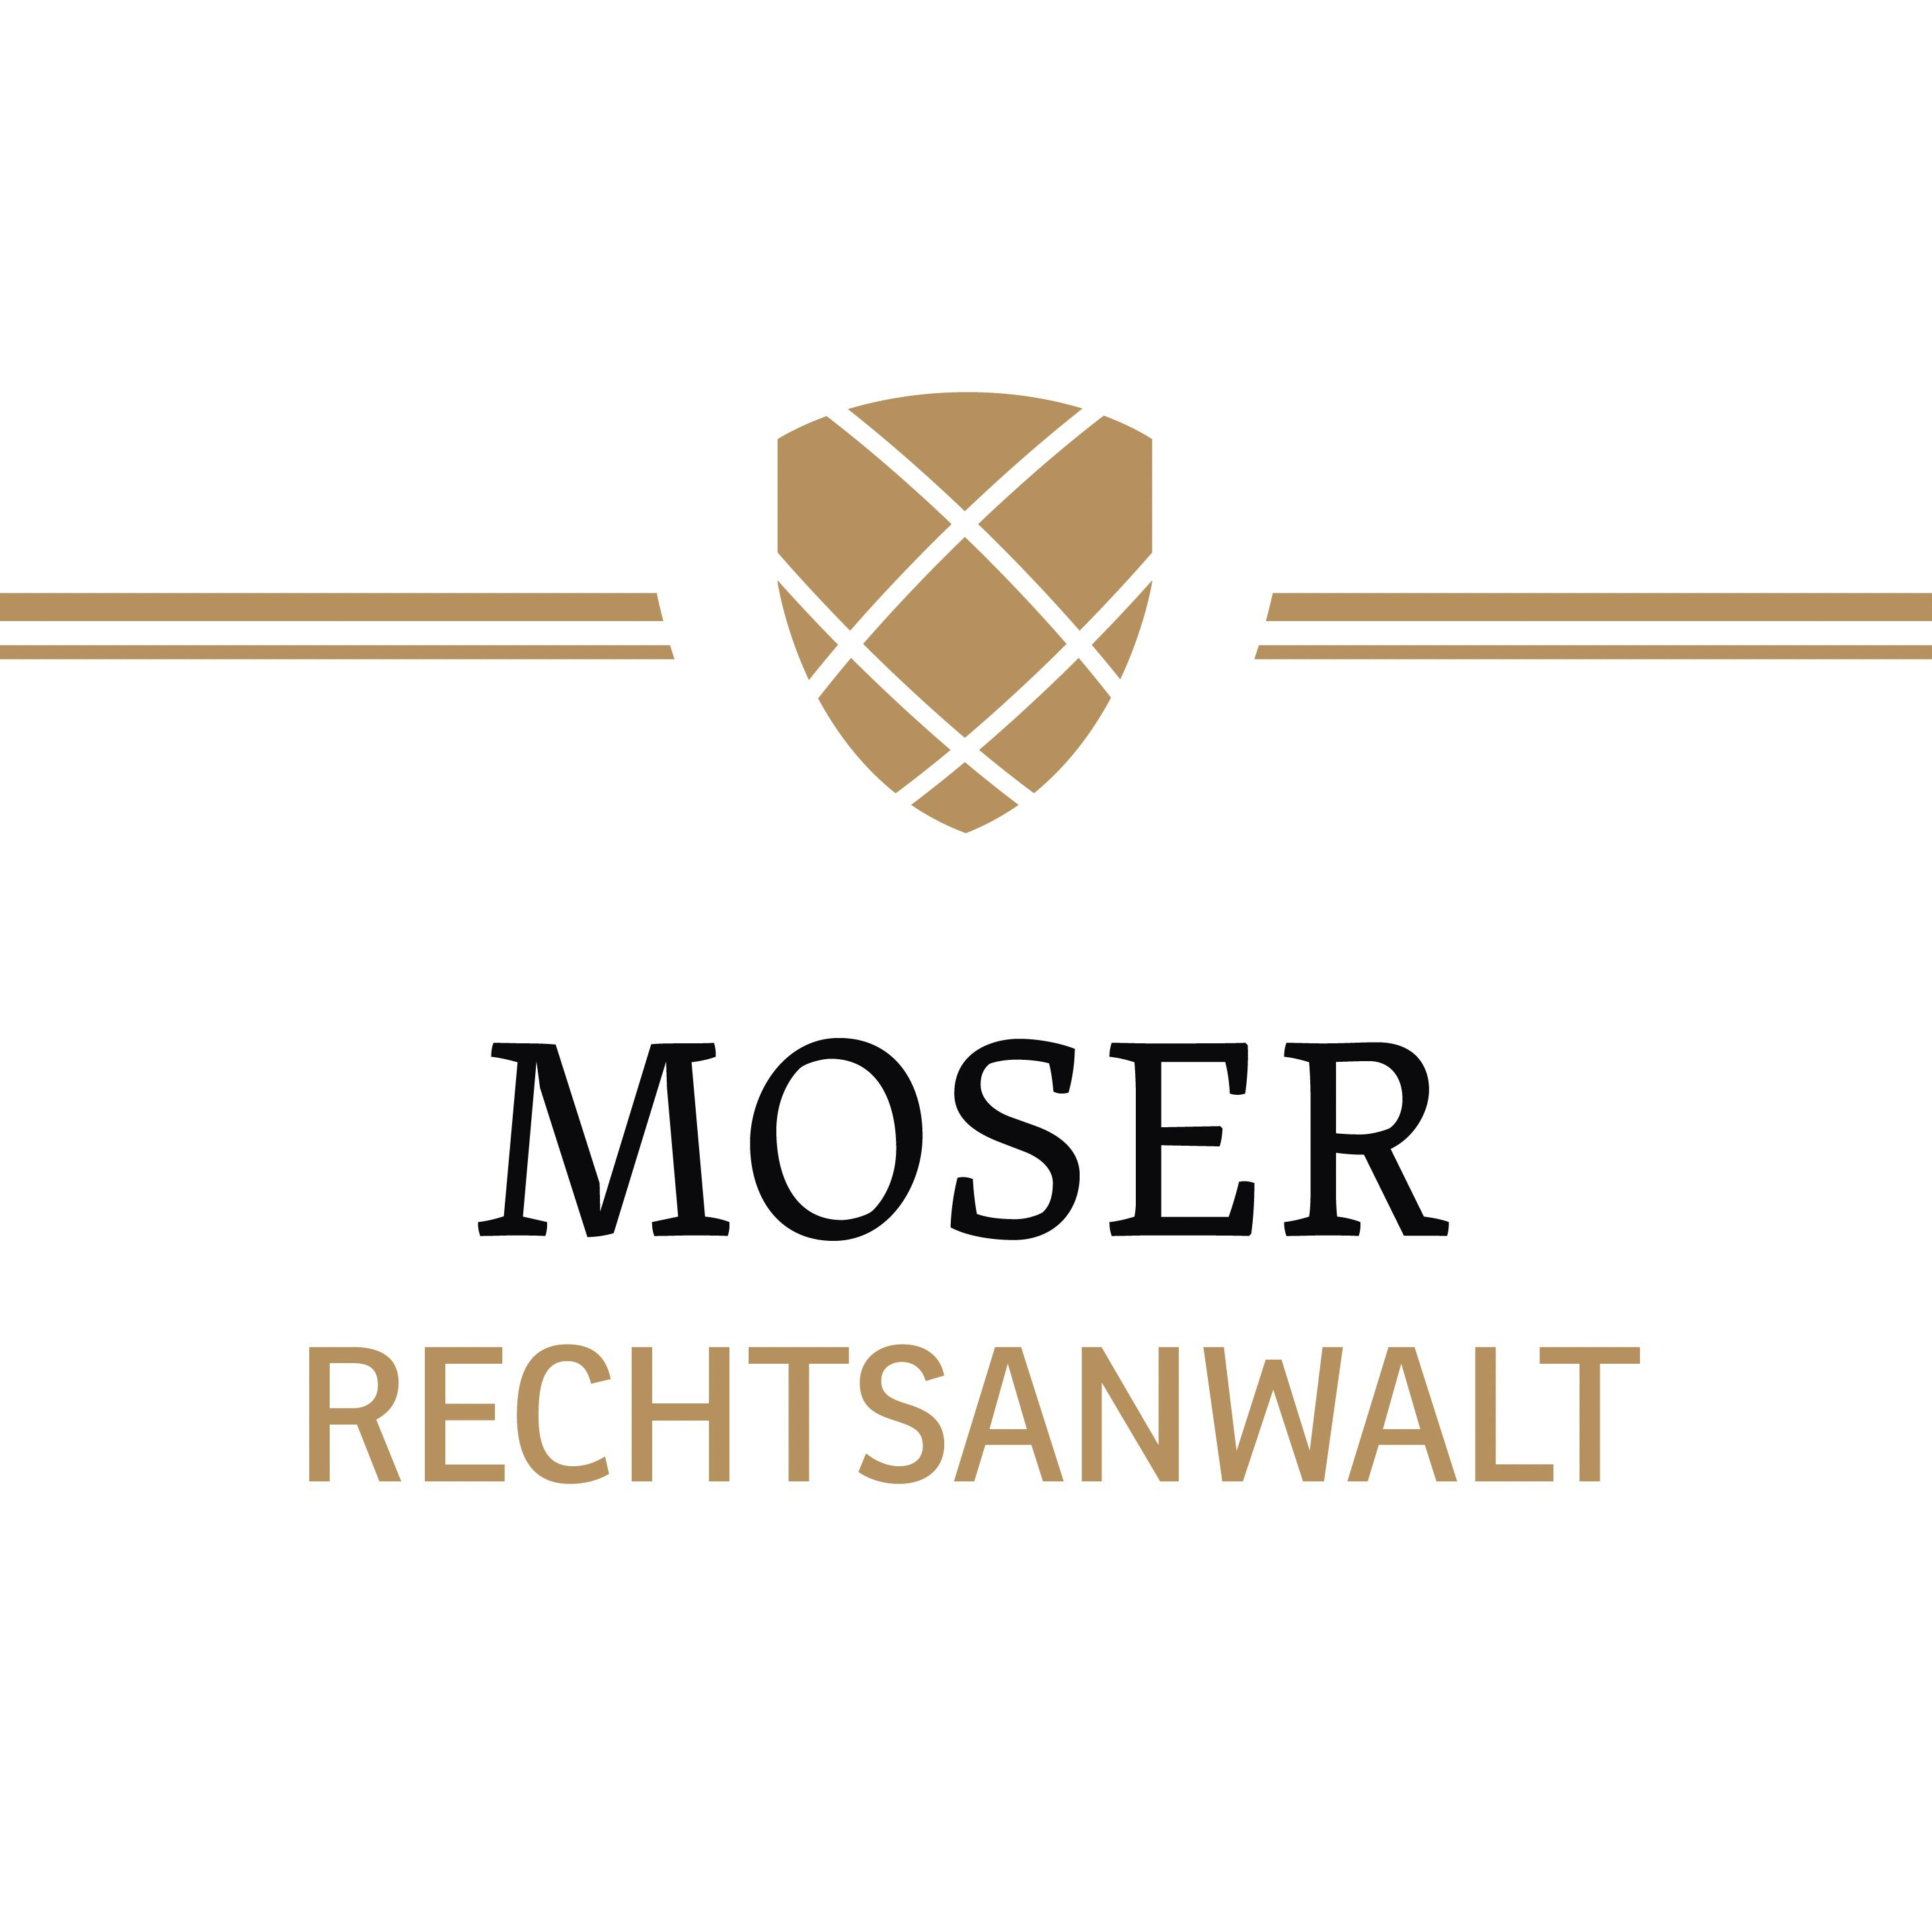 Moser Rechtsanwalt Logo